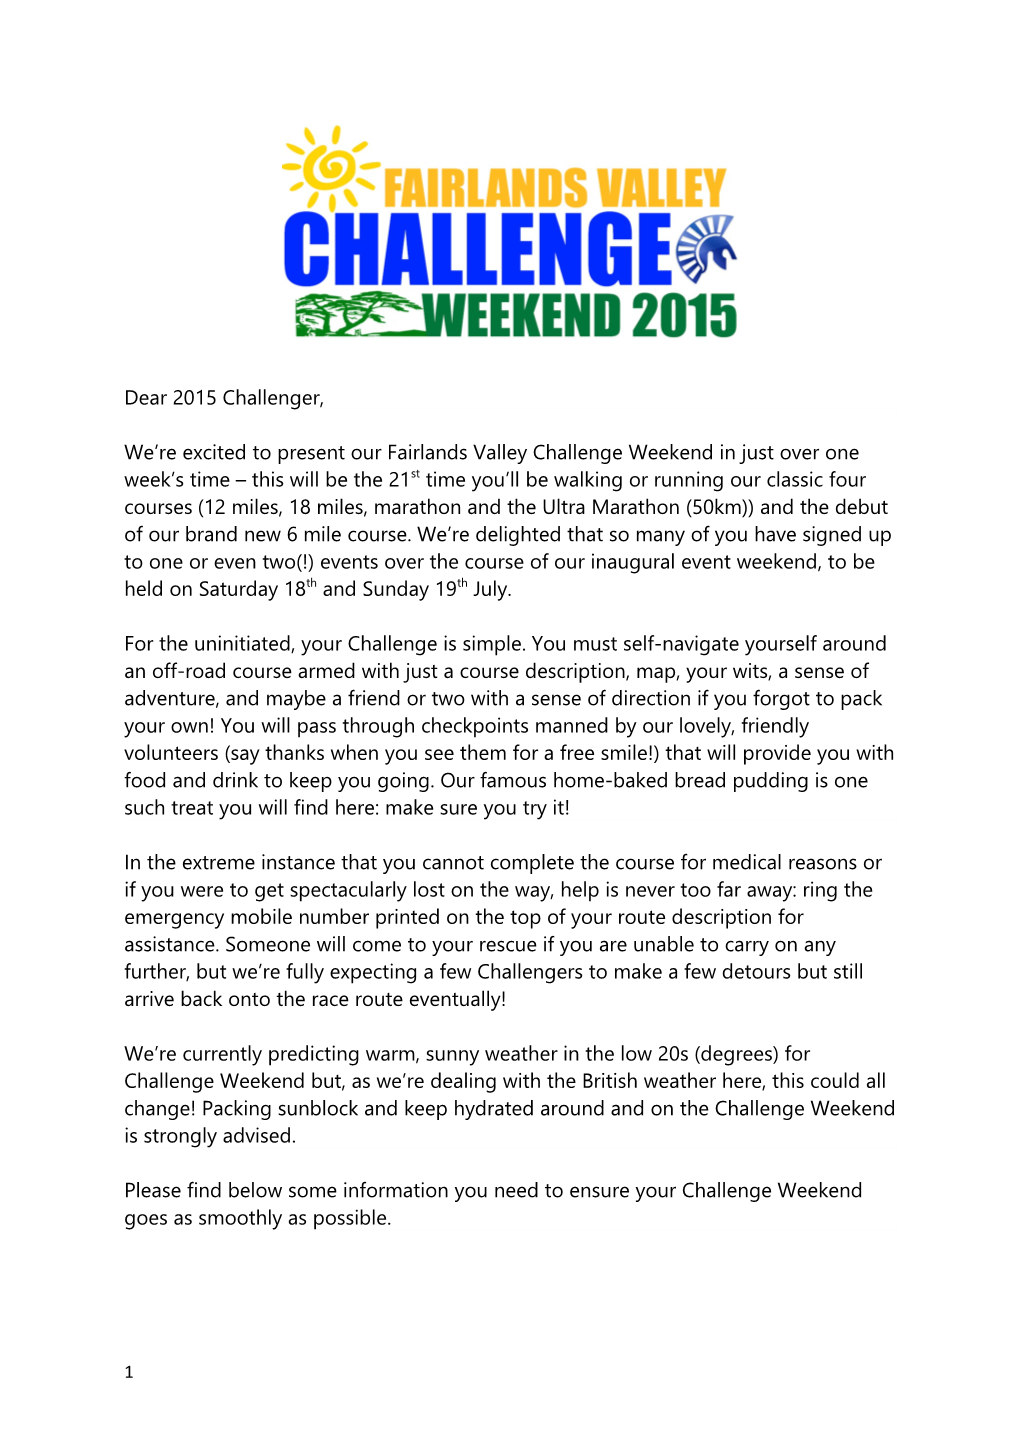 Dear 2015 Challenger